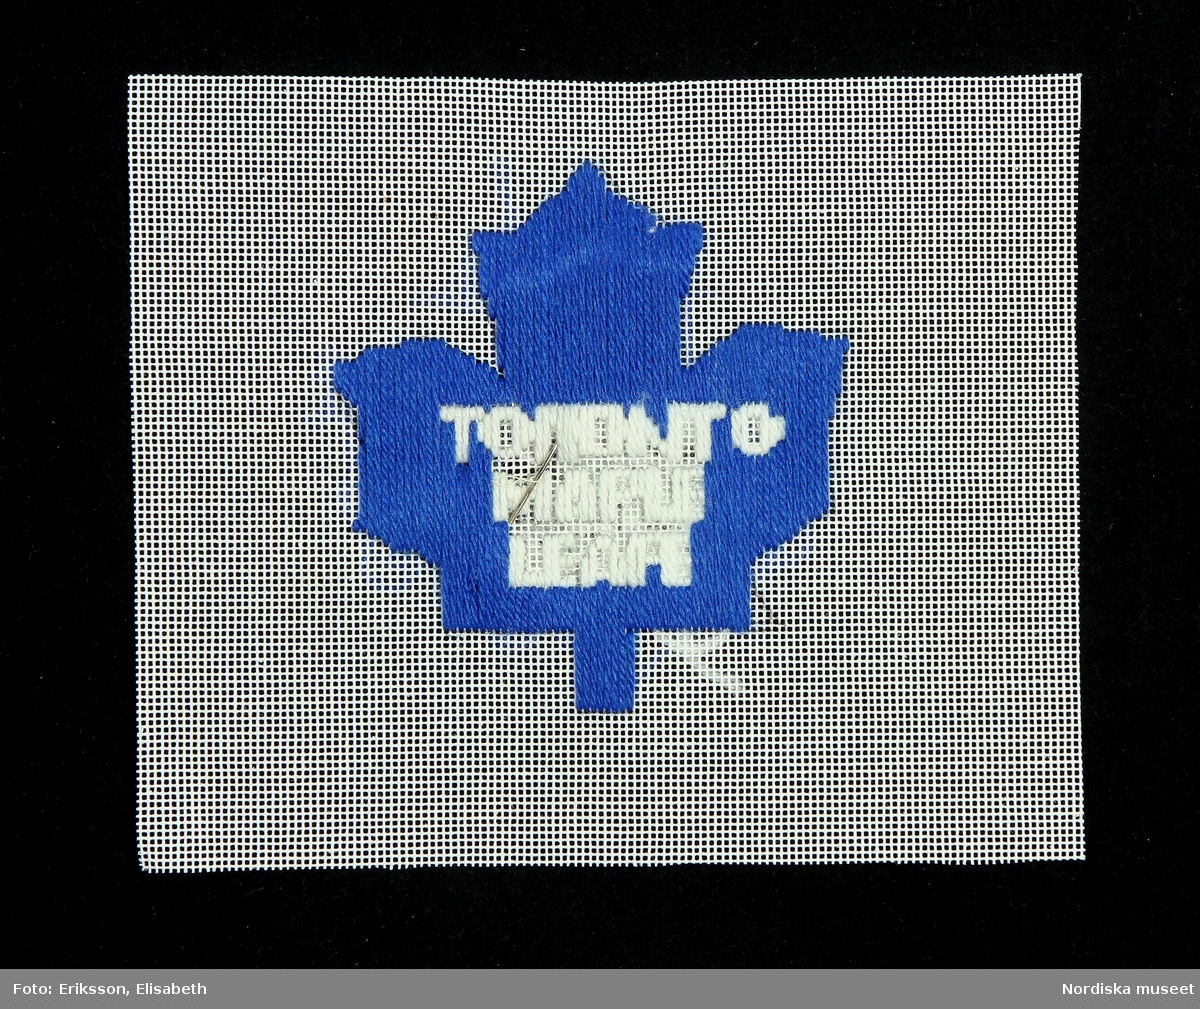 Löv, lönnlöv, logotypen för hockeylaget Toronto Maple Leafe.